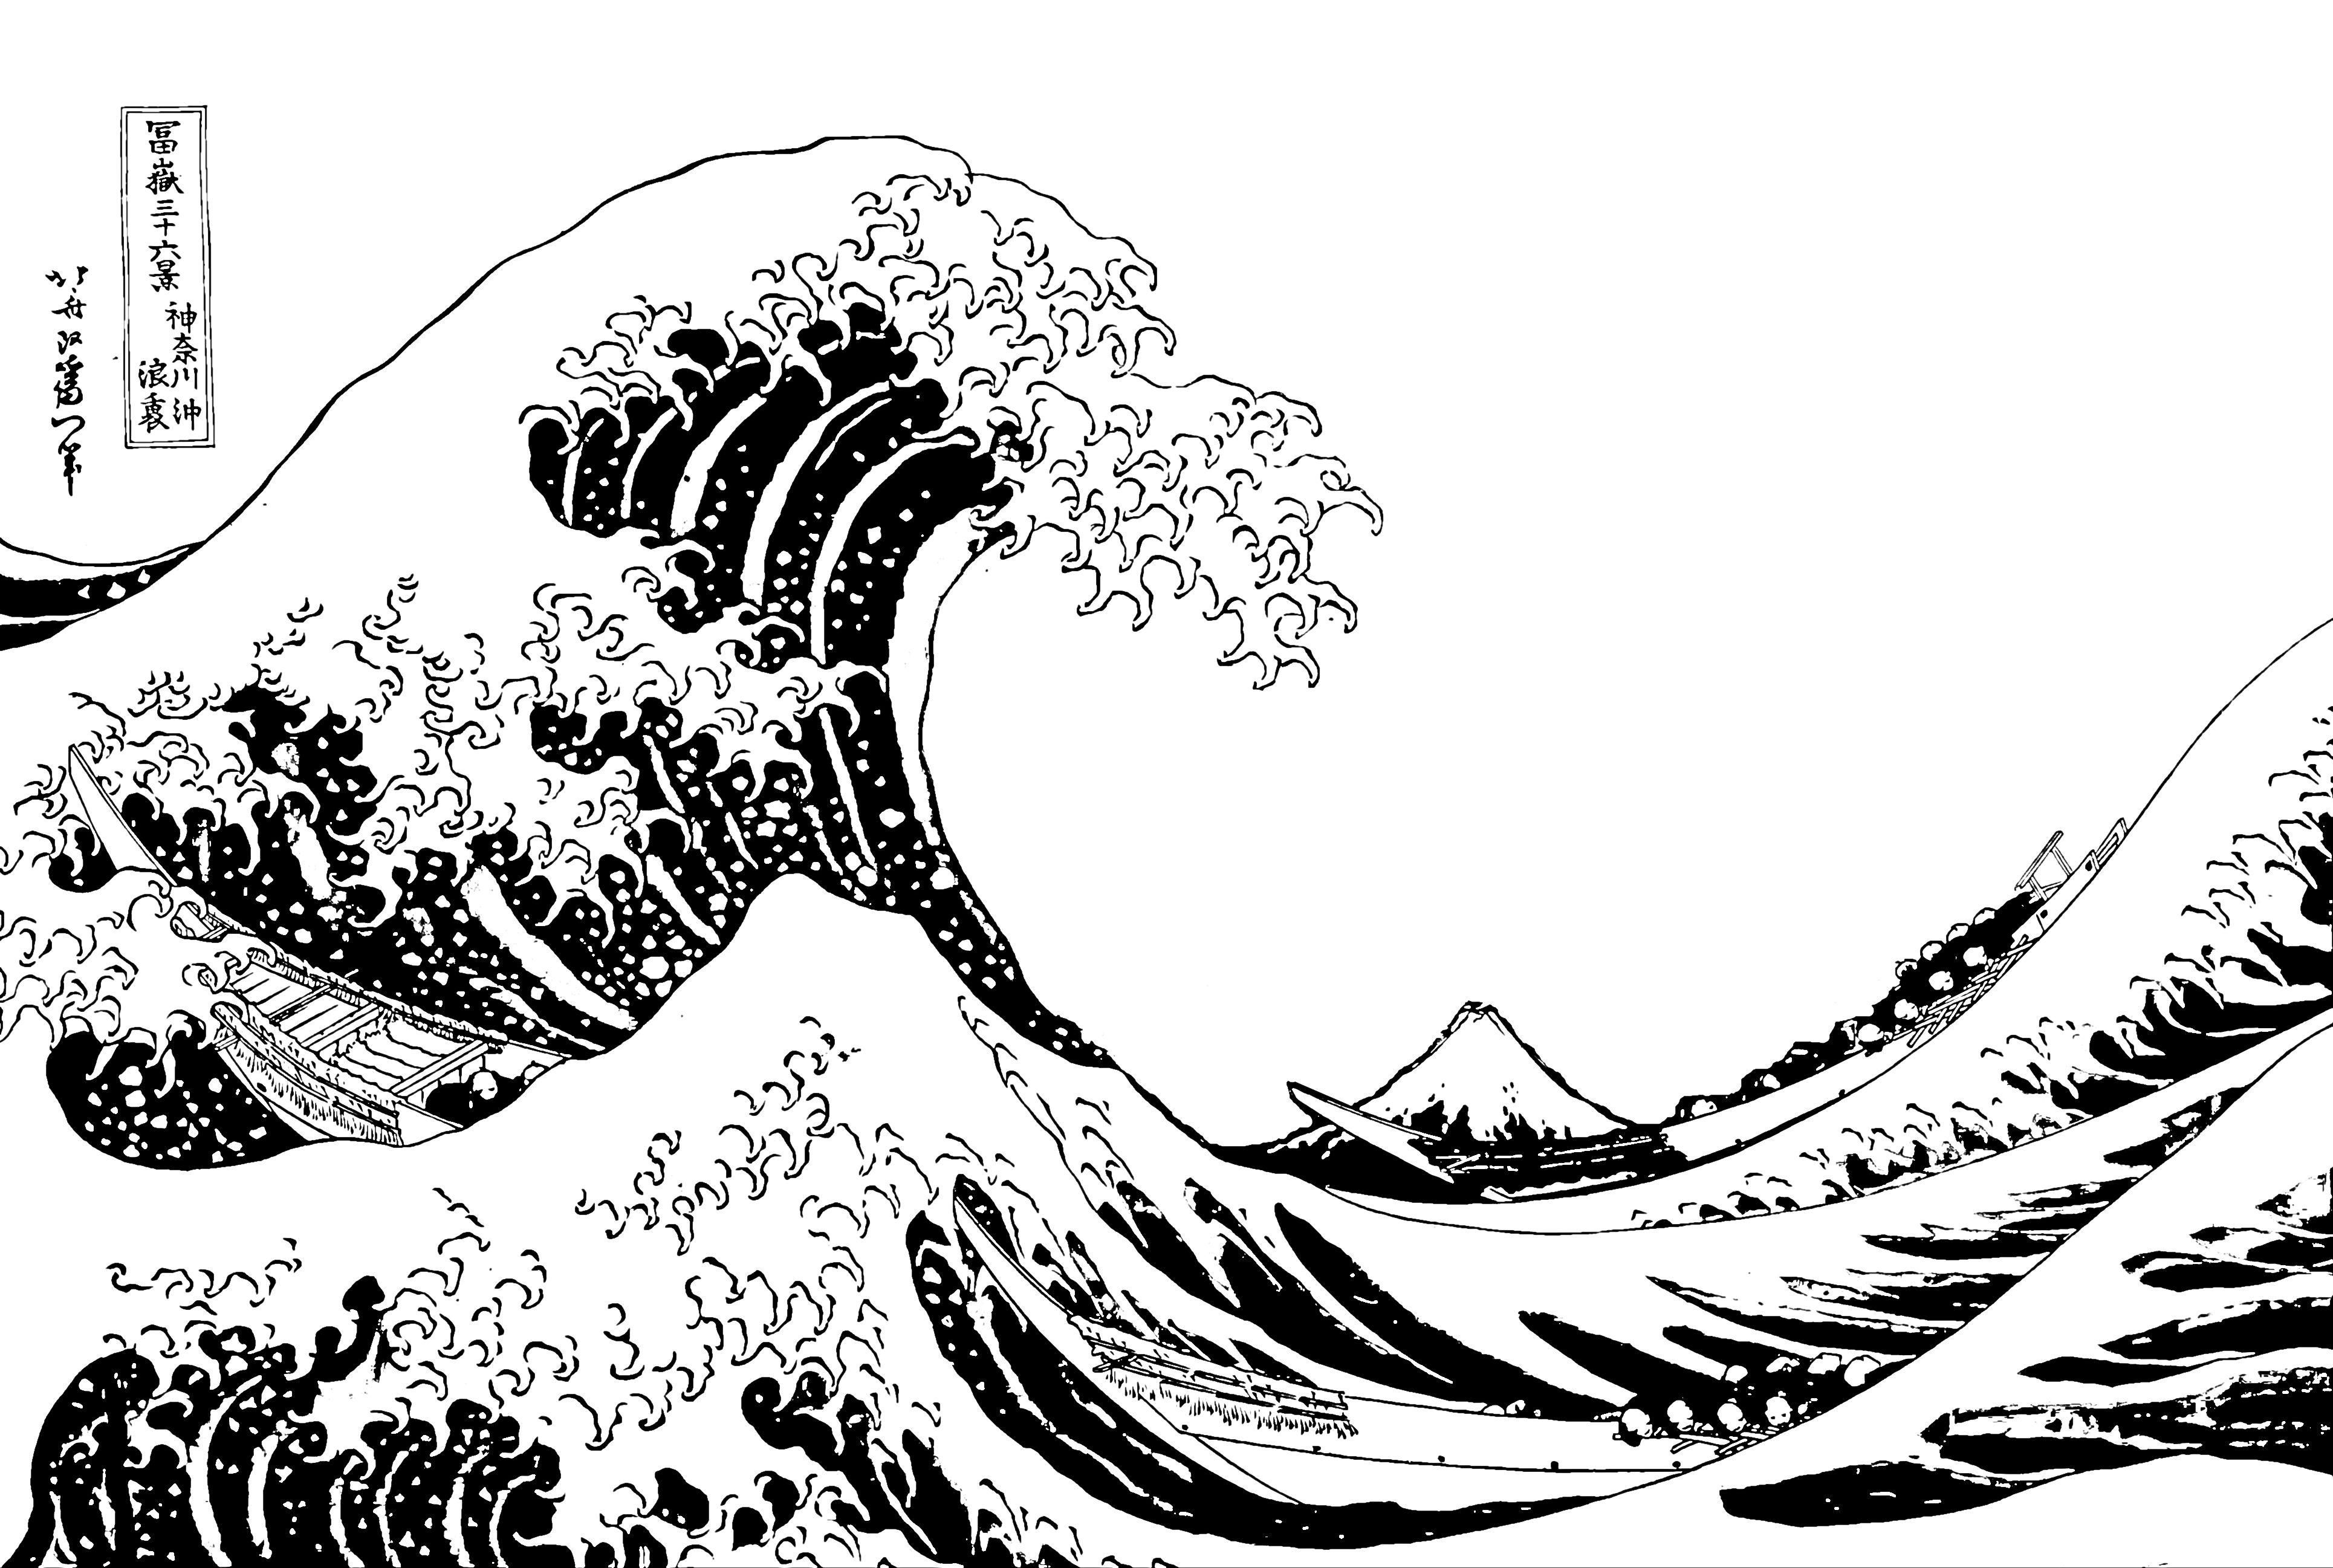 Japanese Wave Black and White Logo - The Great Wave off Kanagawa, Katsushika Hokusai - Download Free 3D ...